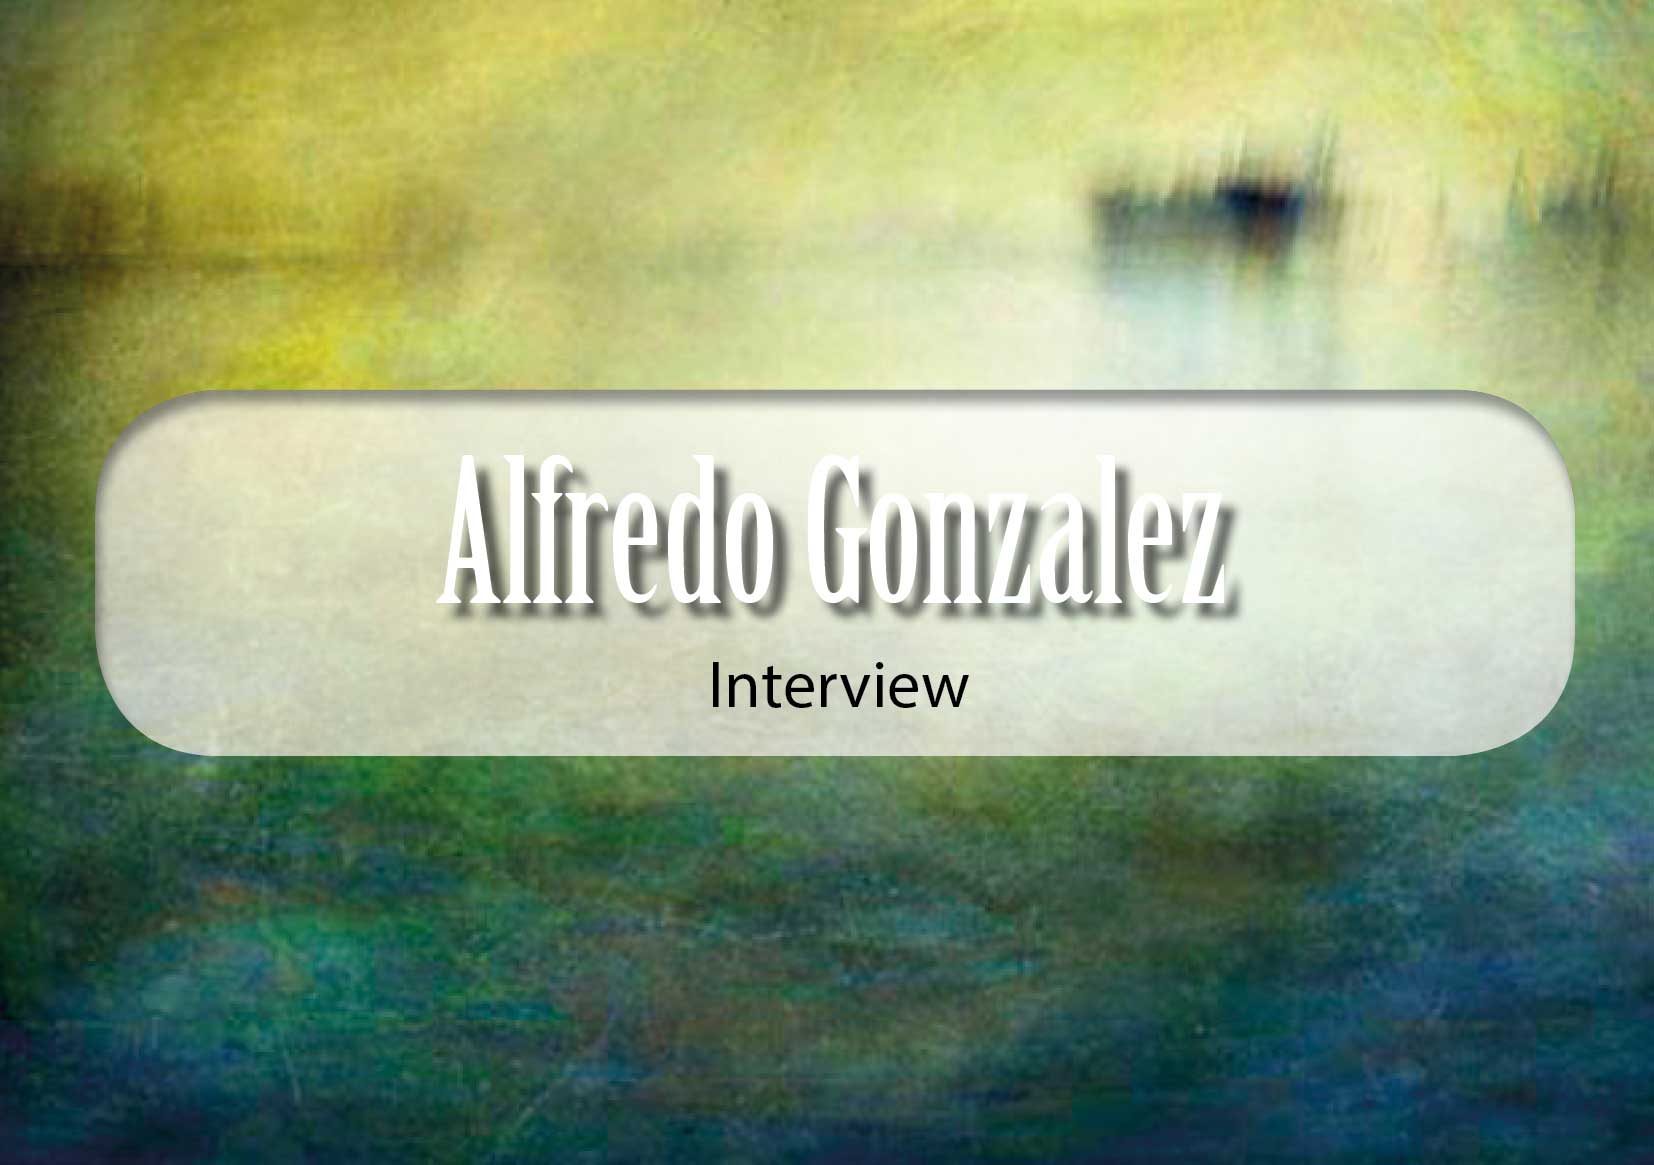 Alfred Gonzalez Interview